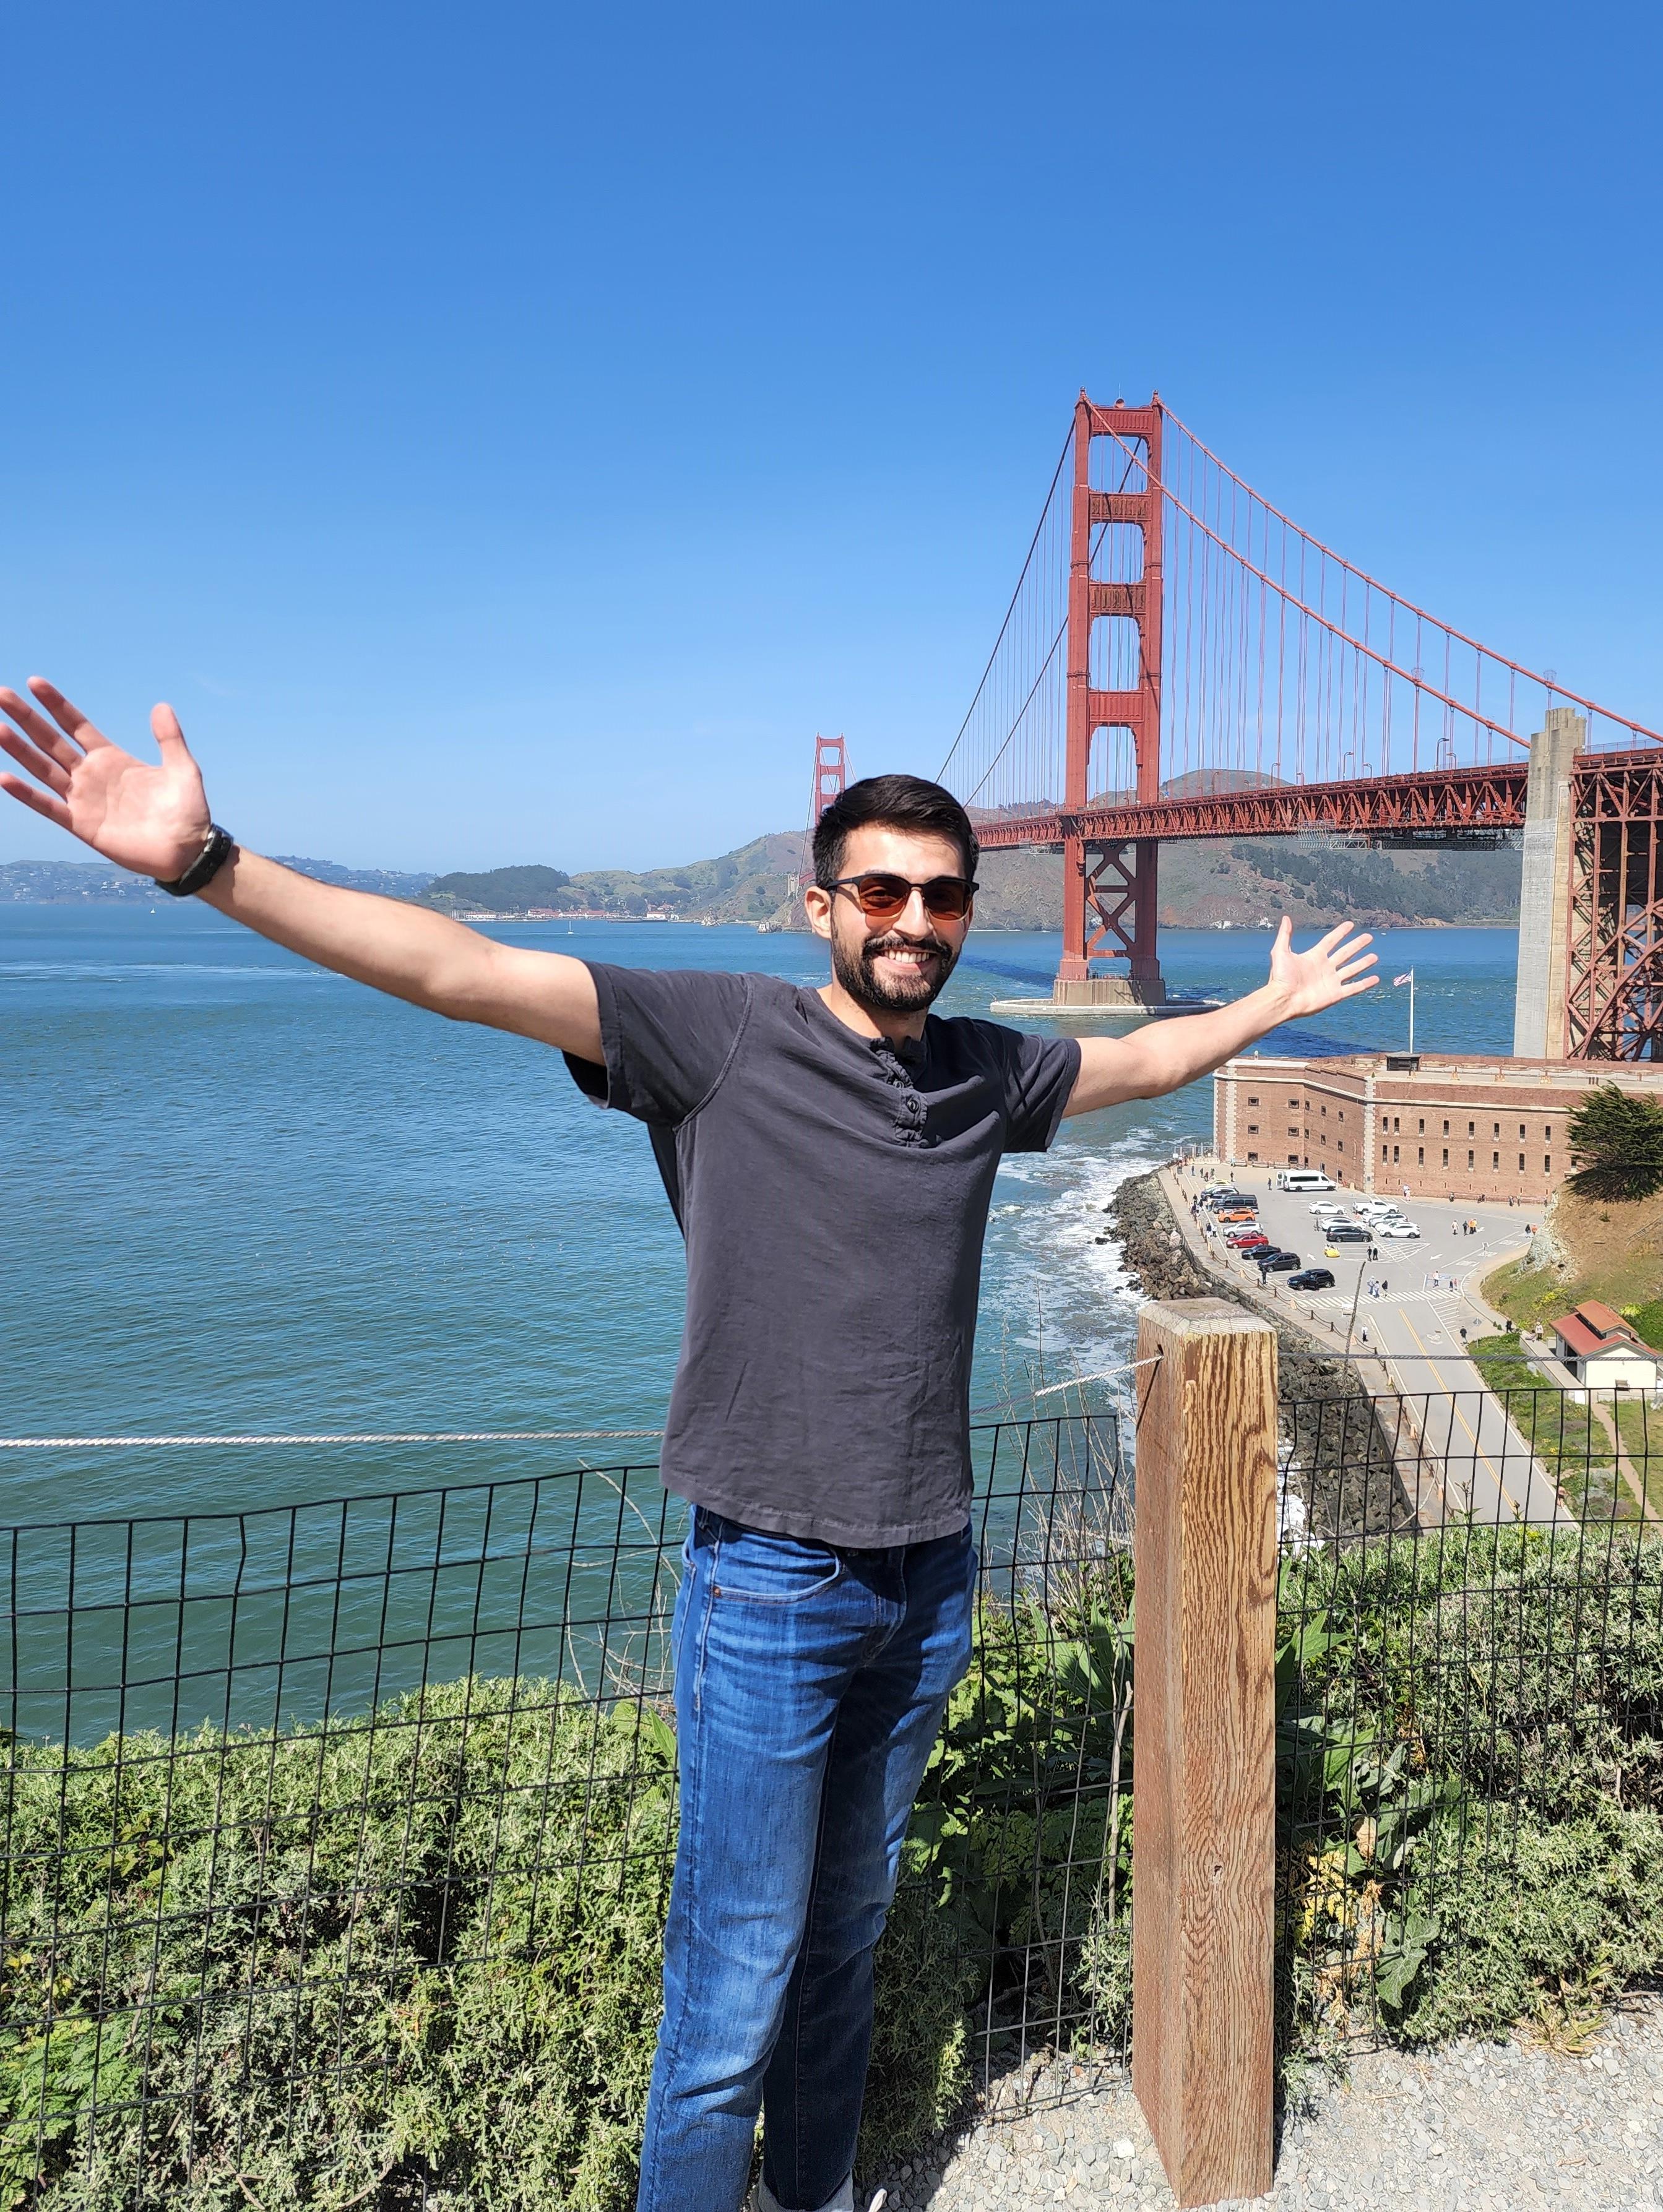 州立工程硕士毕业生大发彩票网全部平台在加州旧金山的金门大桥上